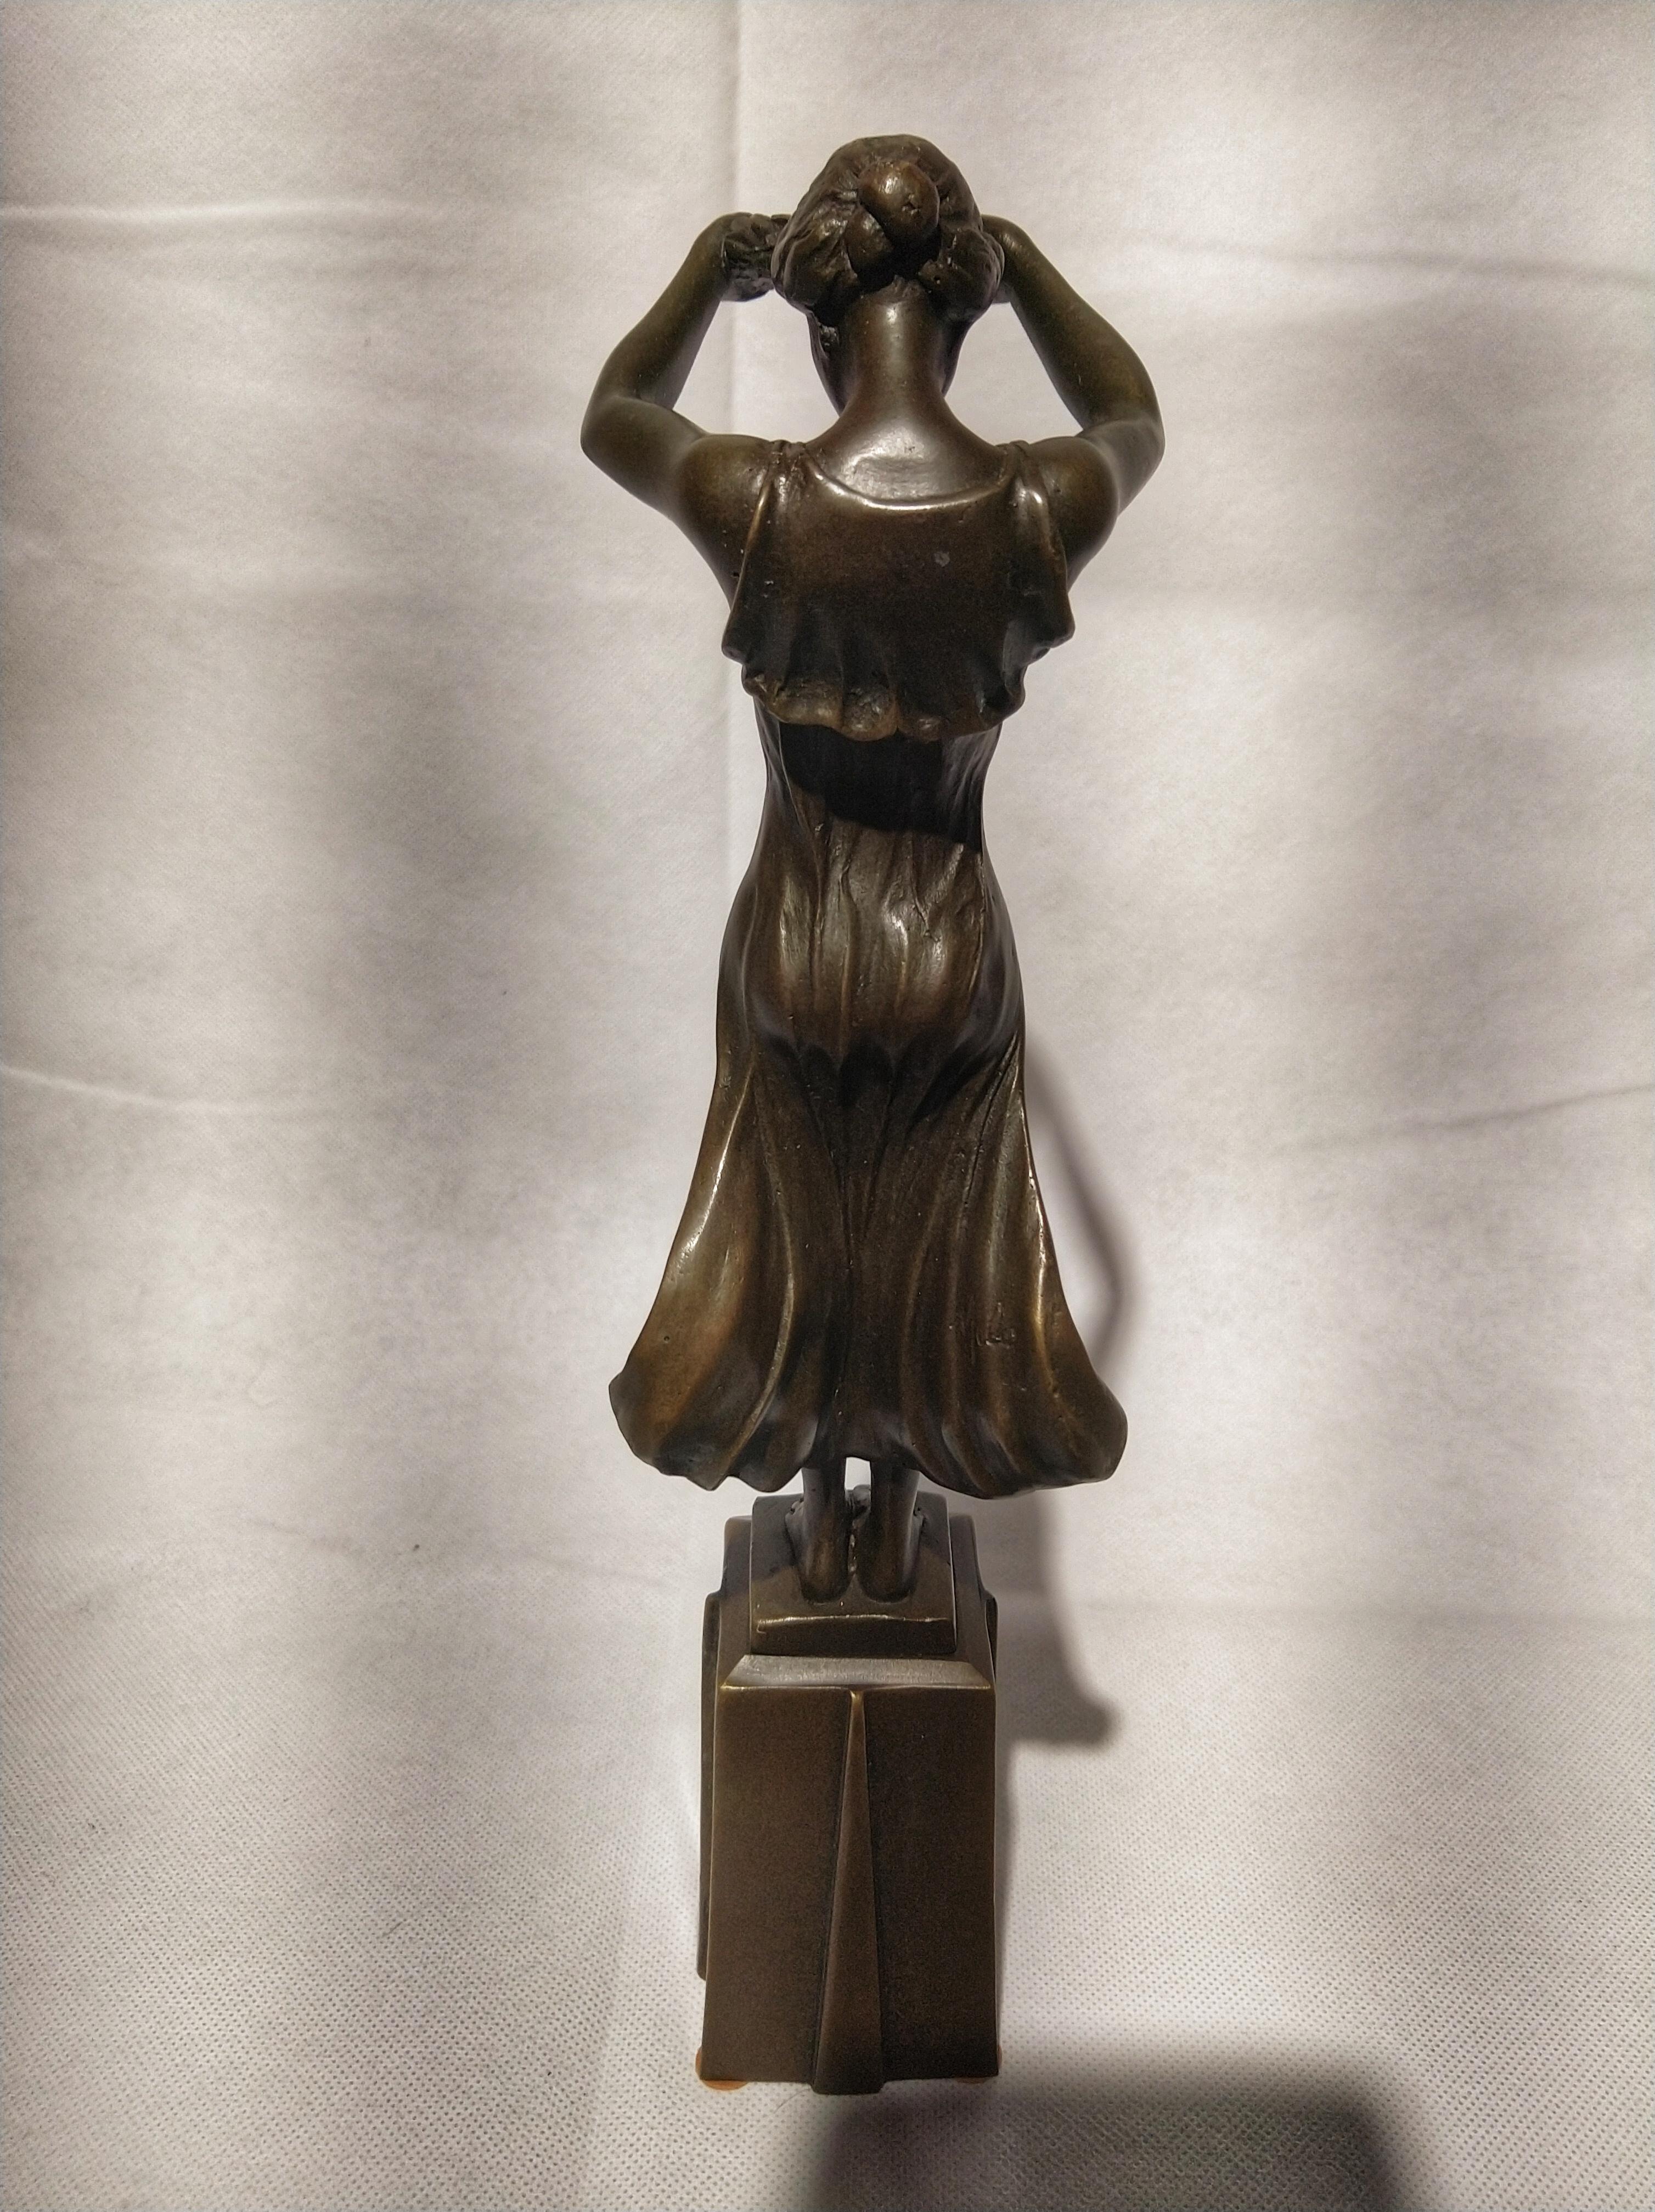 Portuguese 20th Century Art Deco Sculpture Figure Bronze Nymph Daphne By Milo For Sale